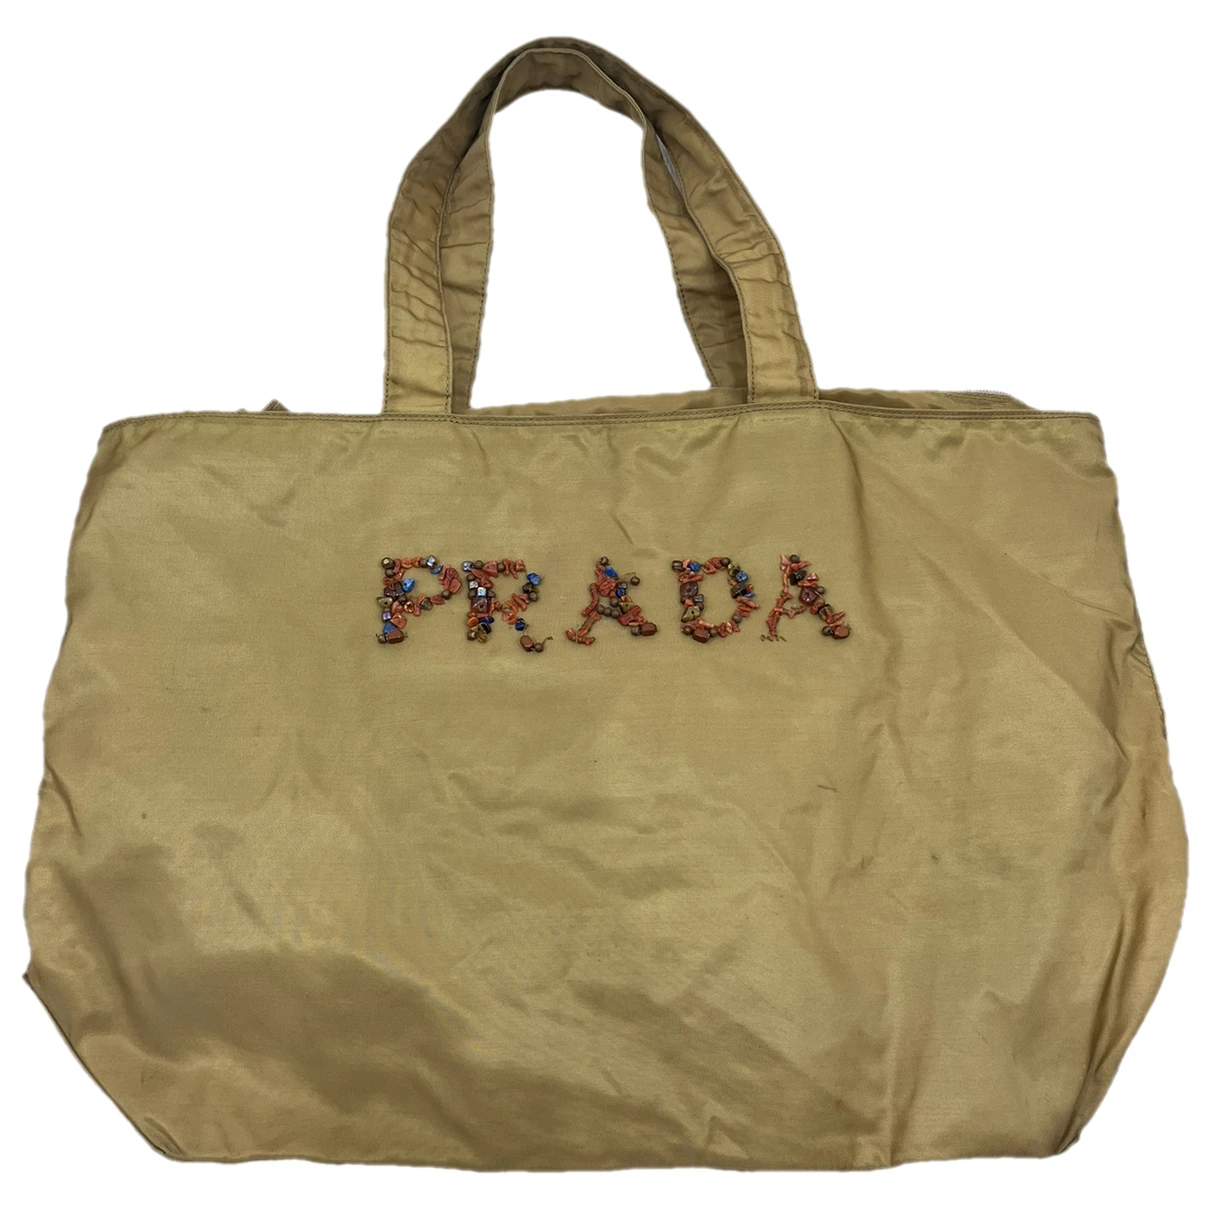 Pre-owned Prada Cloth Tote In Beige